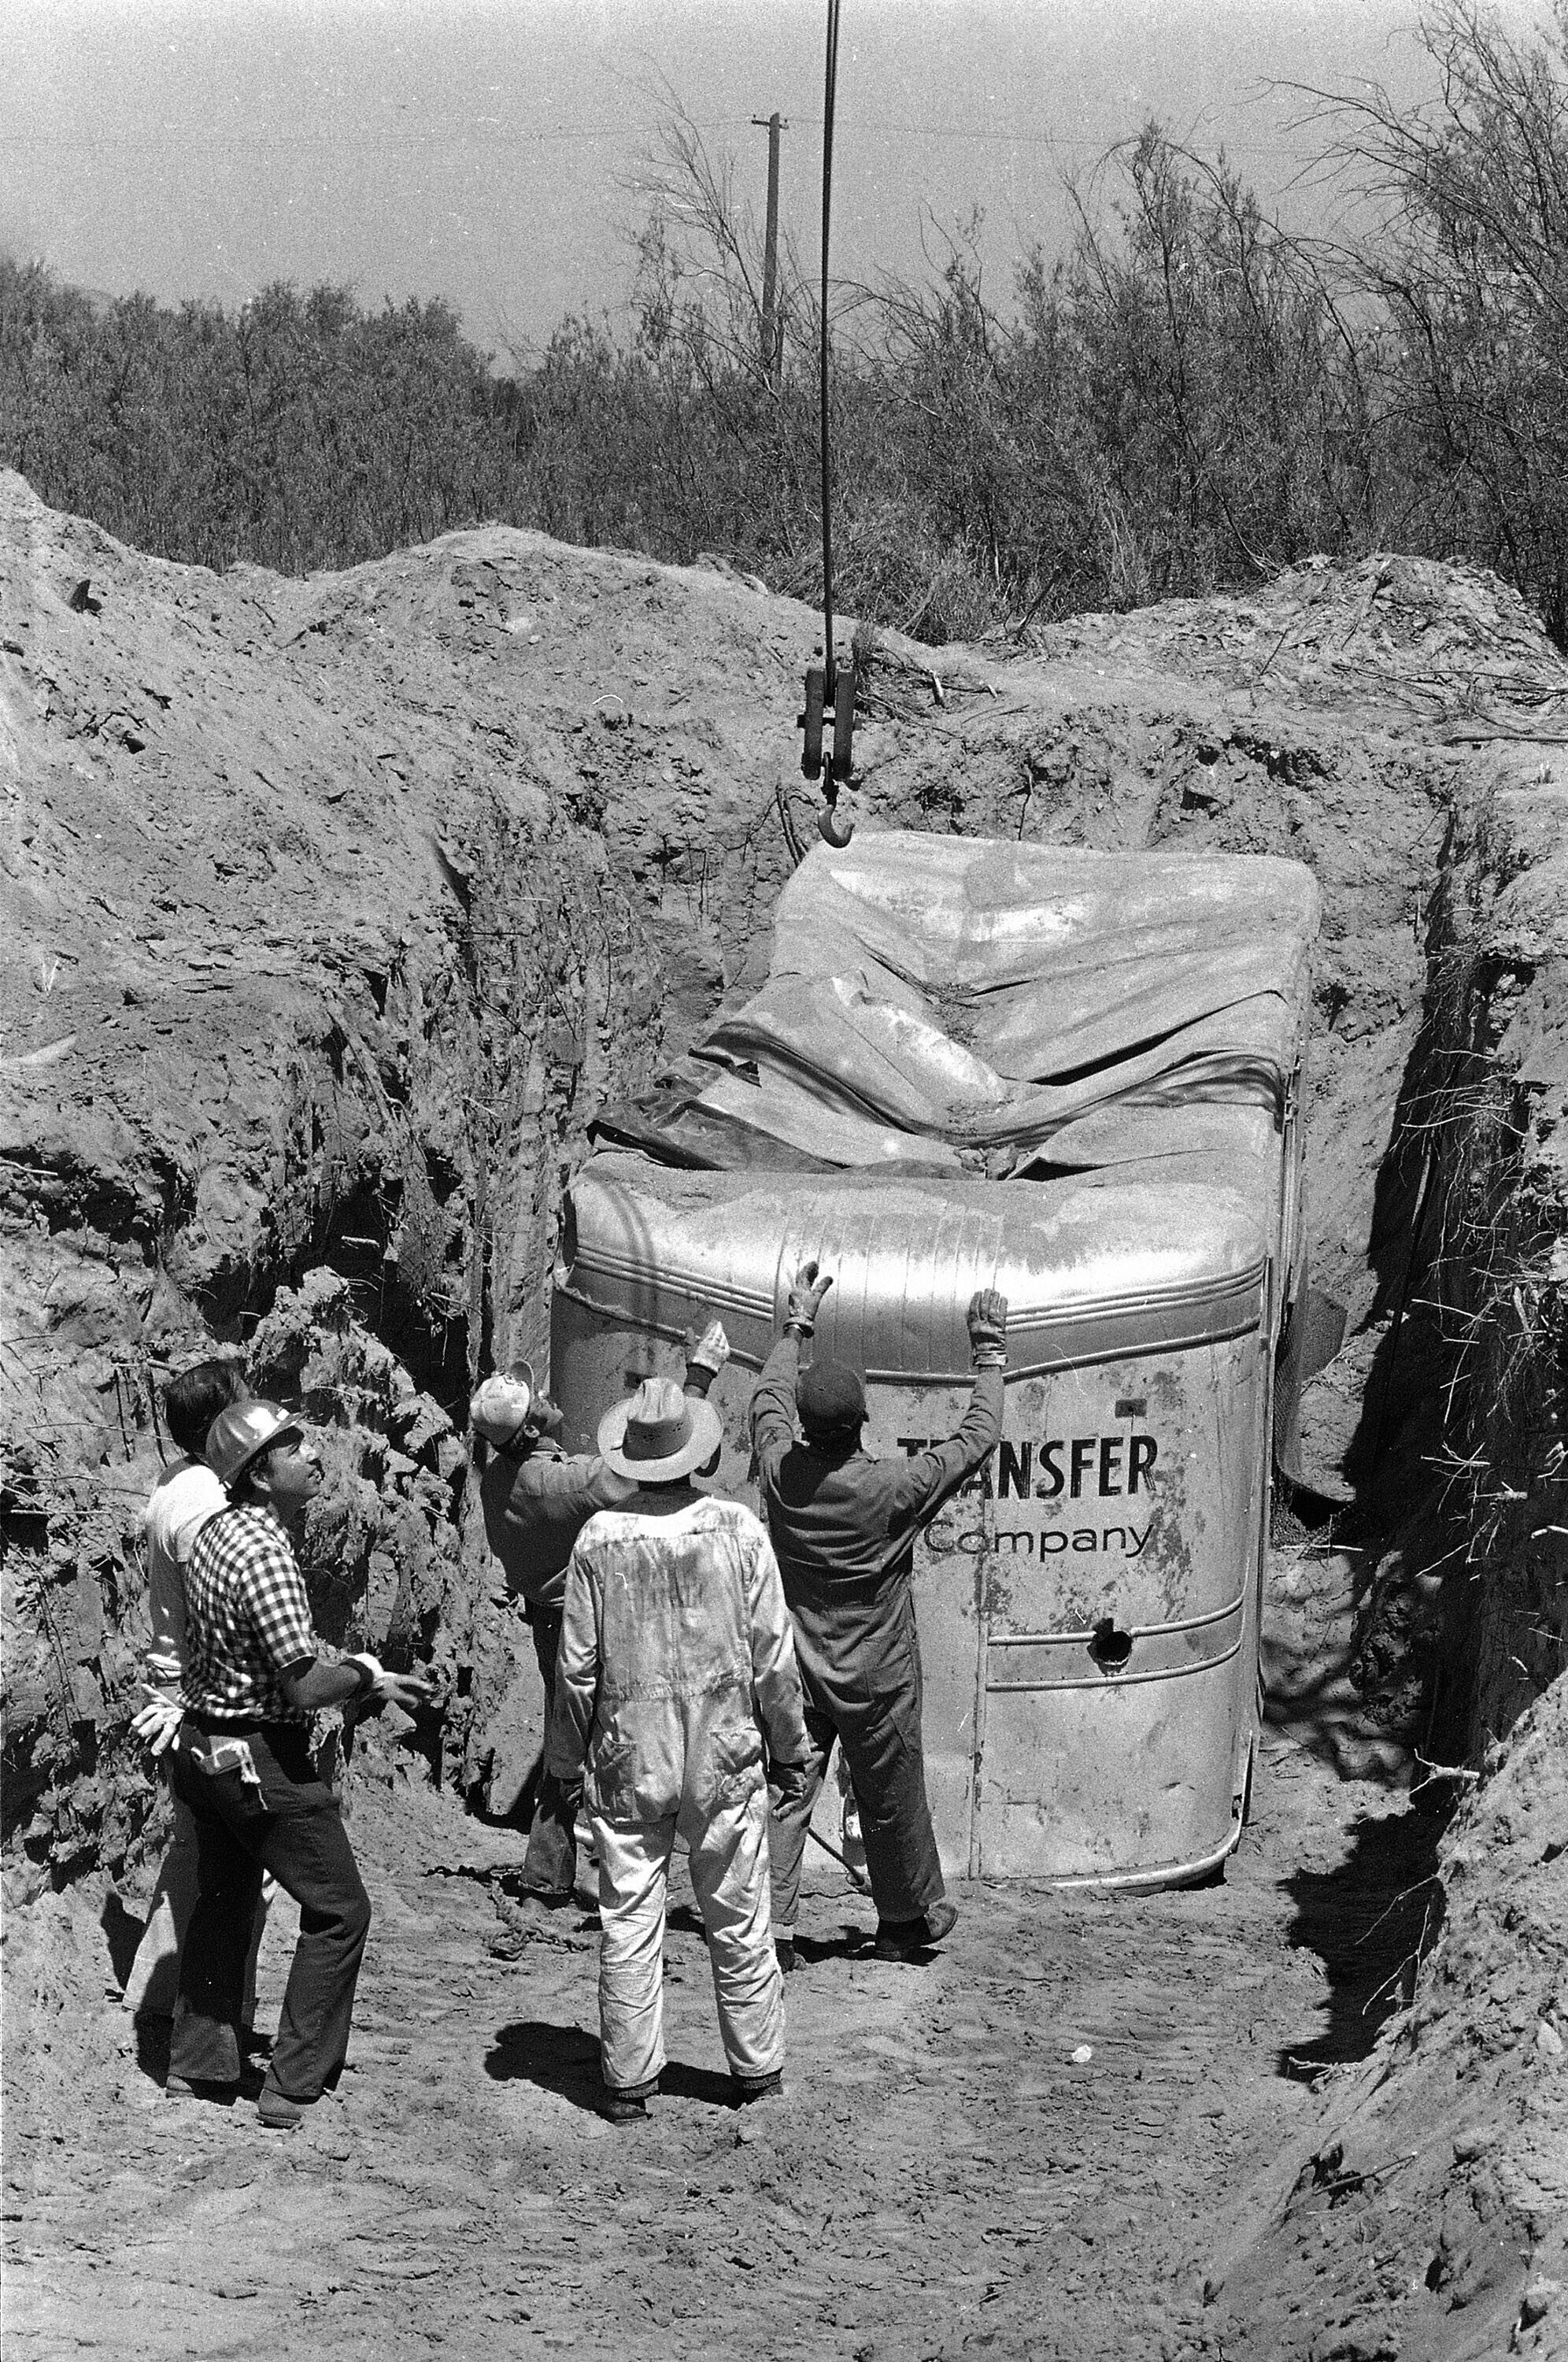 En esta foto del 20 de julio de 1976, los funcionarios retiran la camioneta de mudanzas enterrada en una cantera de rocas en Livermore, California, donde los rehenes habían sido retenidos